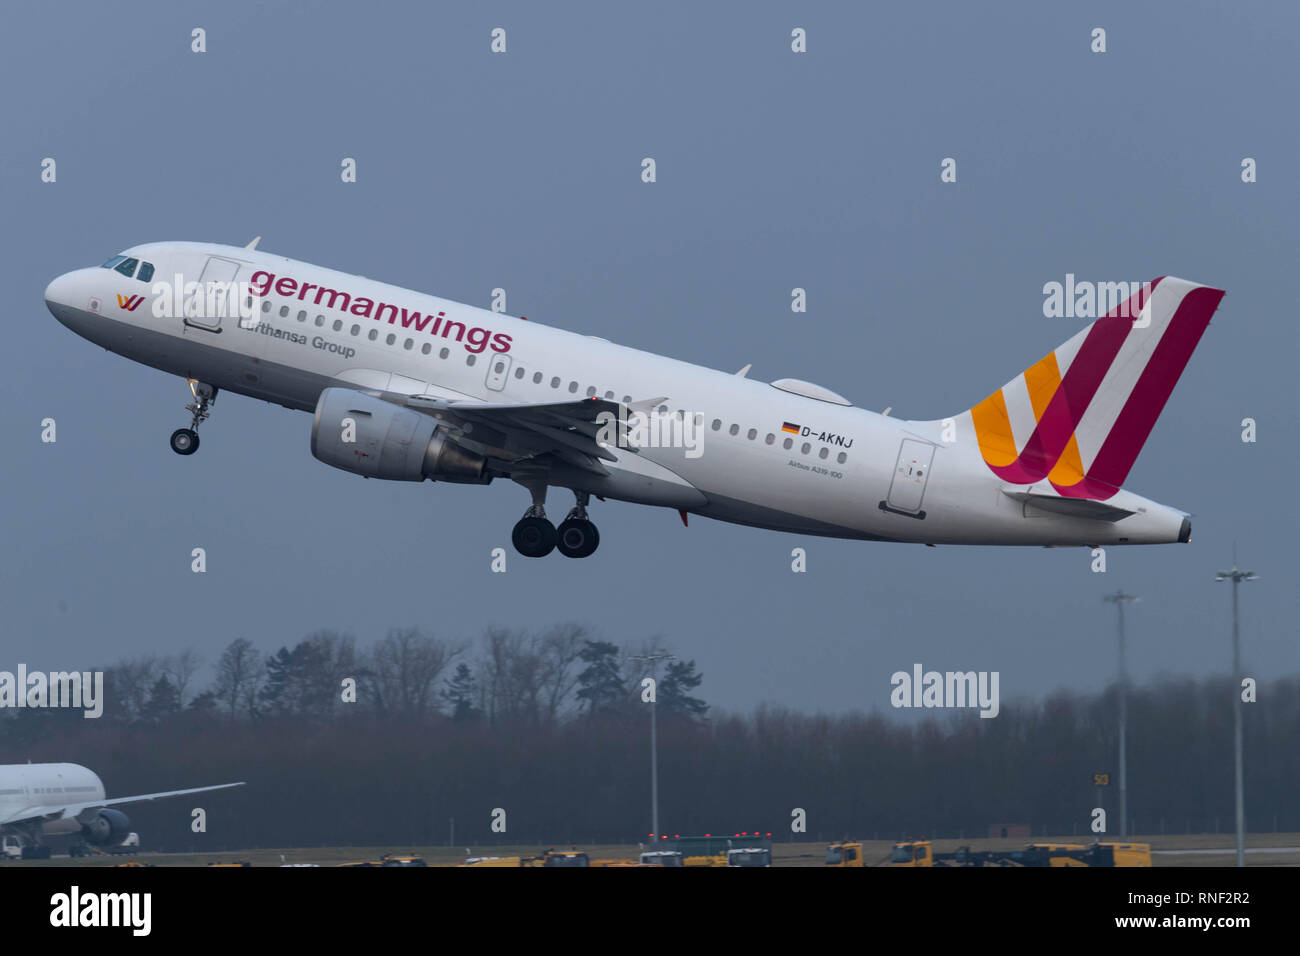 L'aéroport de Stansted Germanwings avions commerciaux d'airbus A319-AKNJ takesoff Banque D'Images